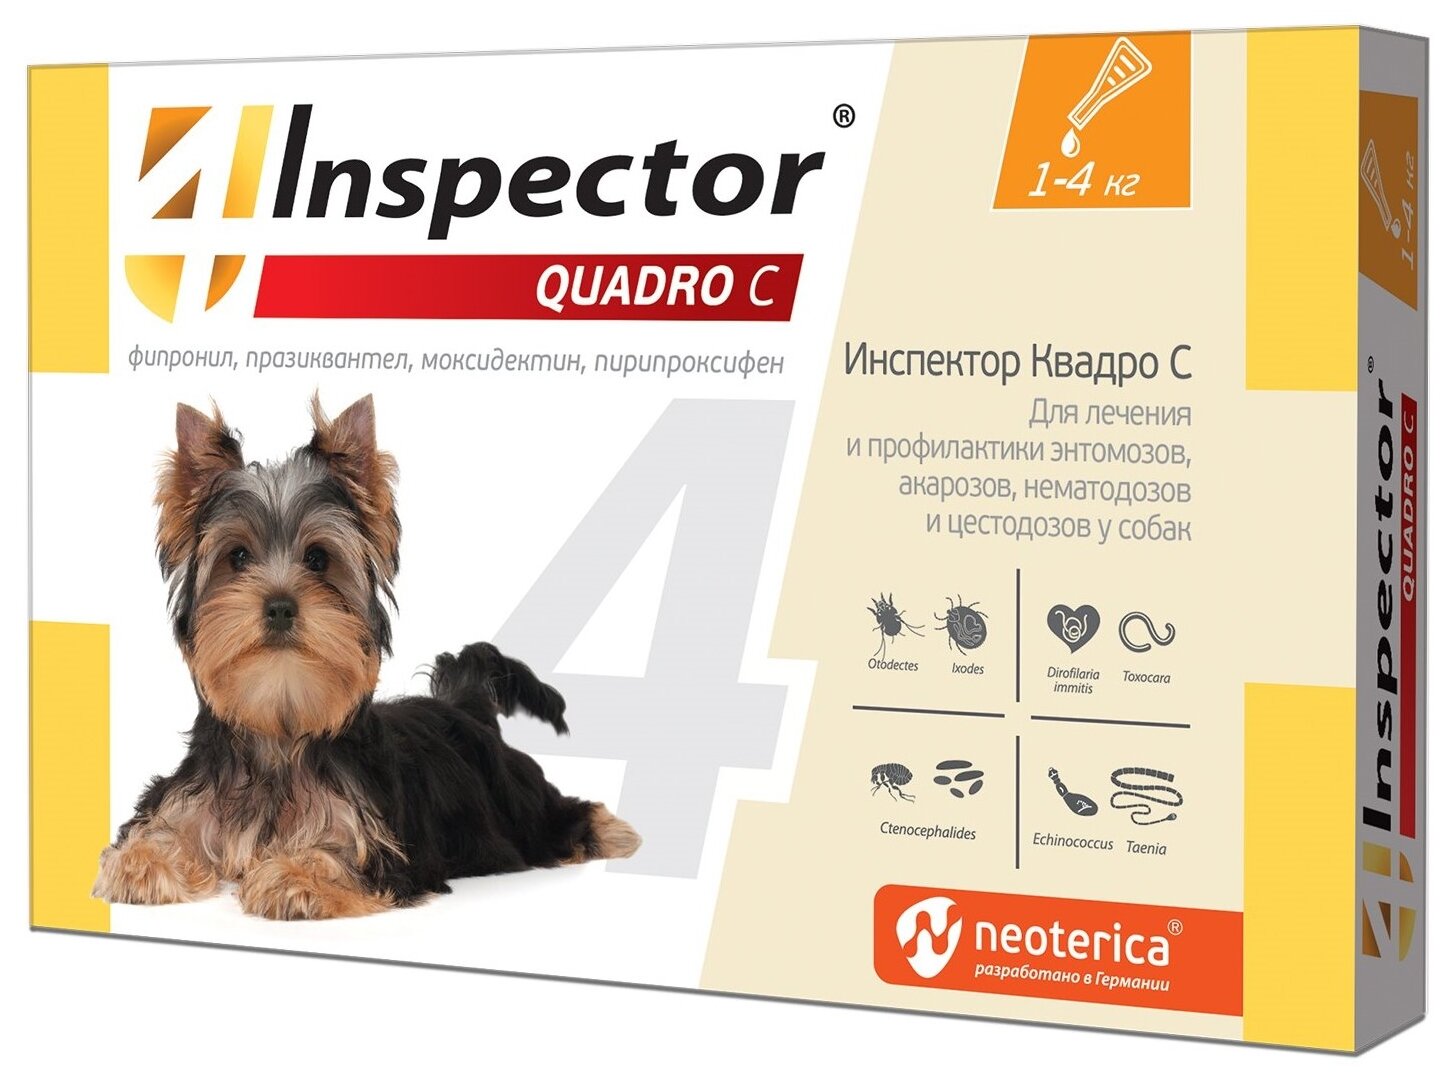 Inspector раствор от блох и клещей Quadro С с 1 до 4 кг для домашних животных — купить в интернет-магазине по низкой цене на Яндекс Маркете